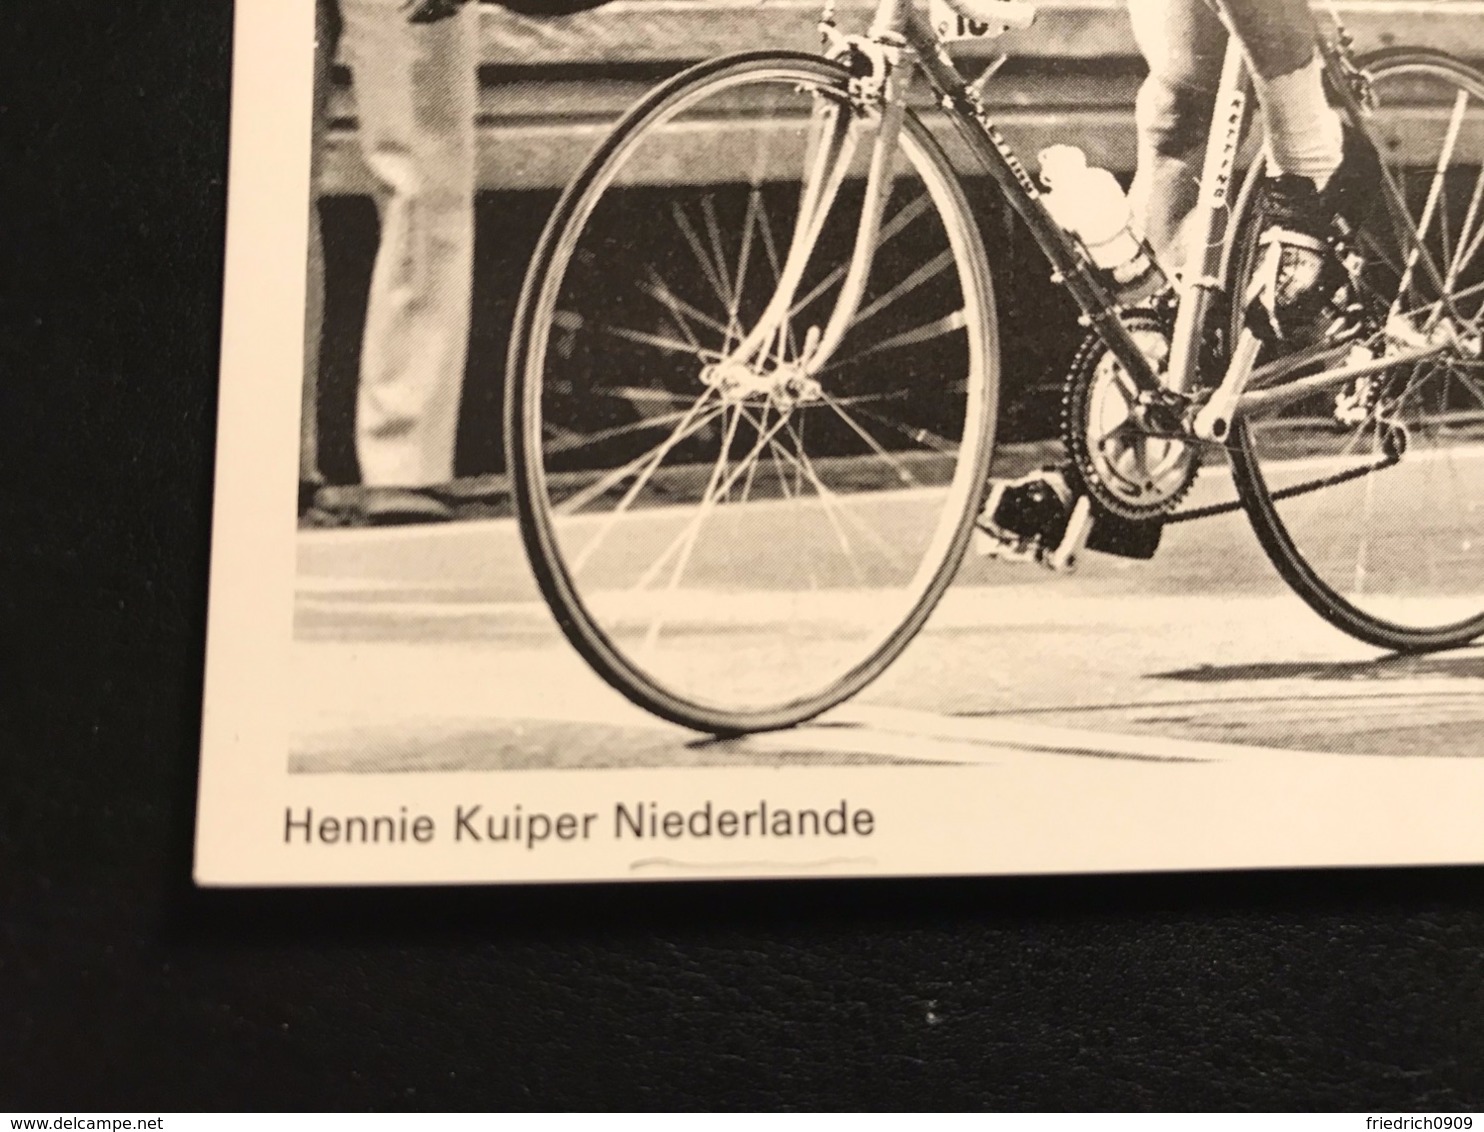 Hennie Kuiper 1972 Gold Olympia München Cyclisme Radfahrer Radrennen Radsport  Cycling Velo Wielrennen - Cyclisme